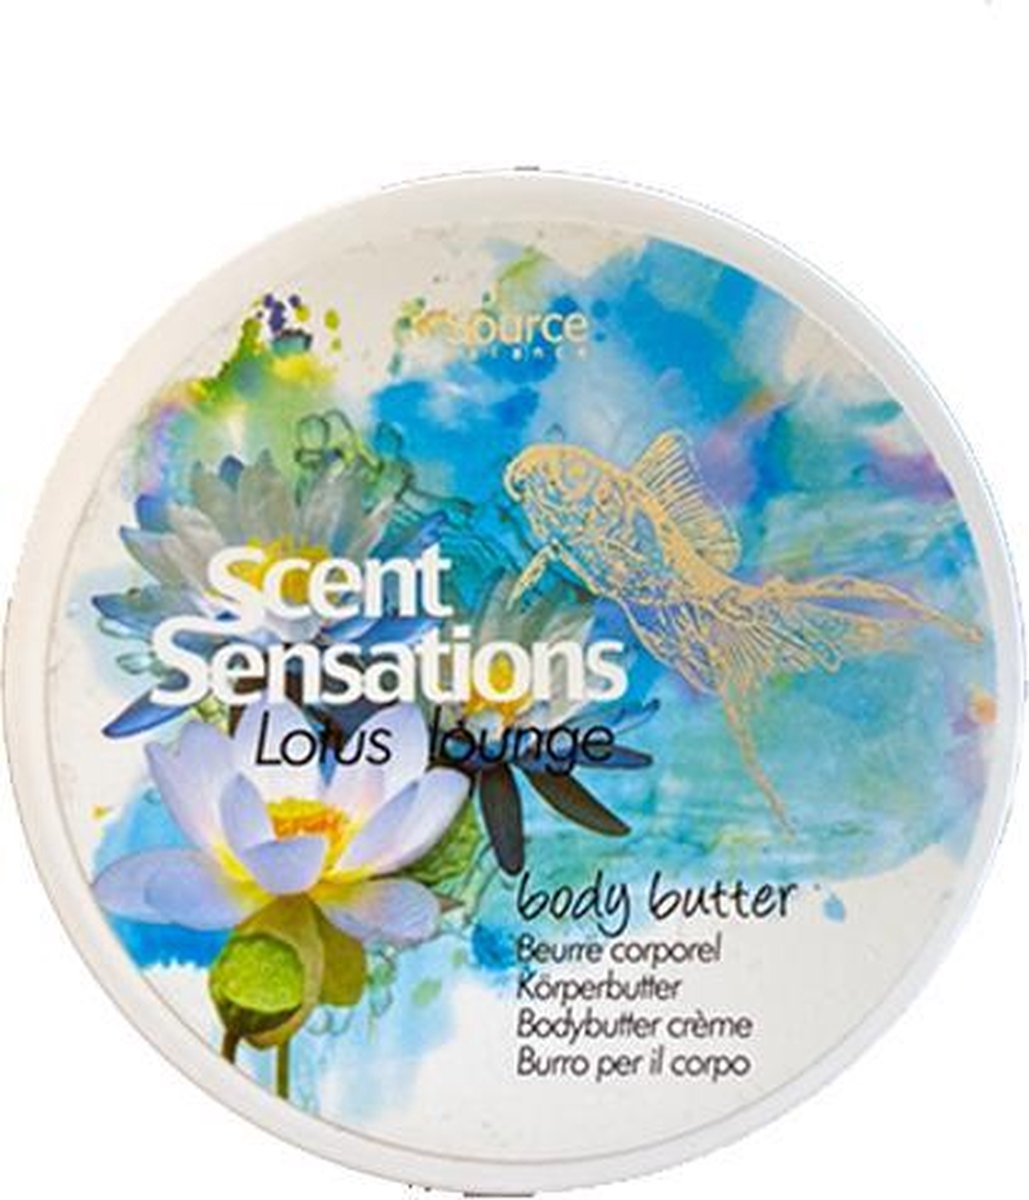 Source Balance - Scent Sensations - Lotus lounge- Body Butter crème